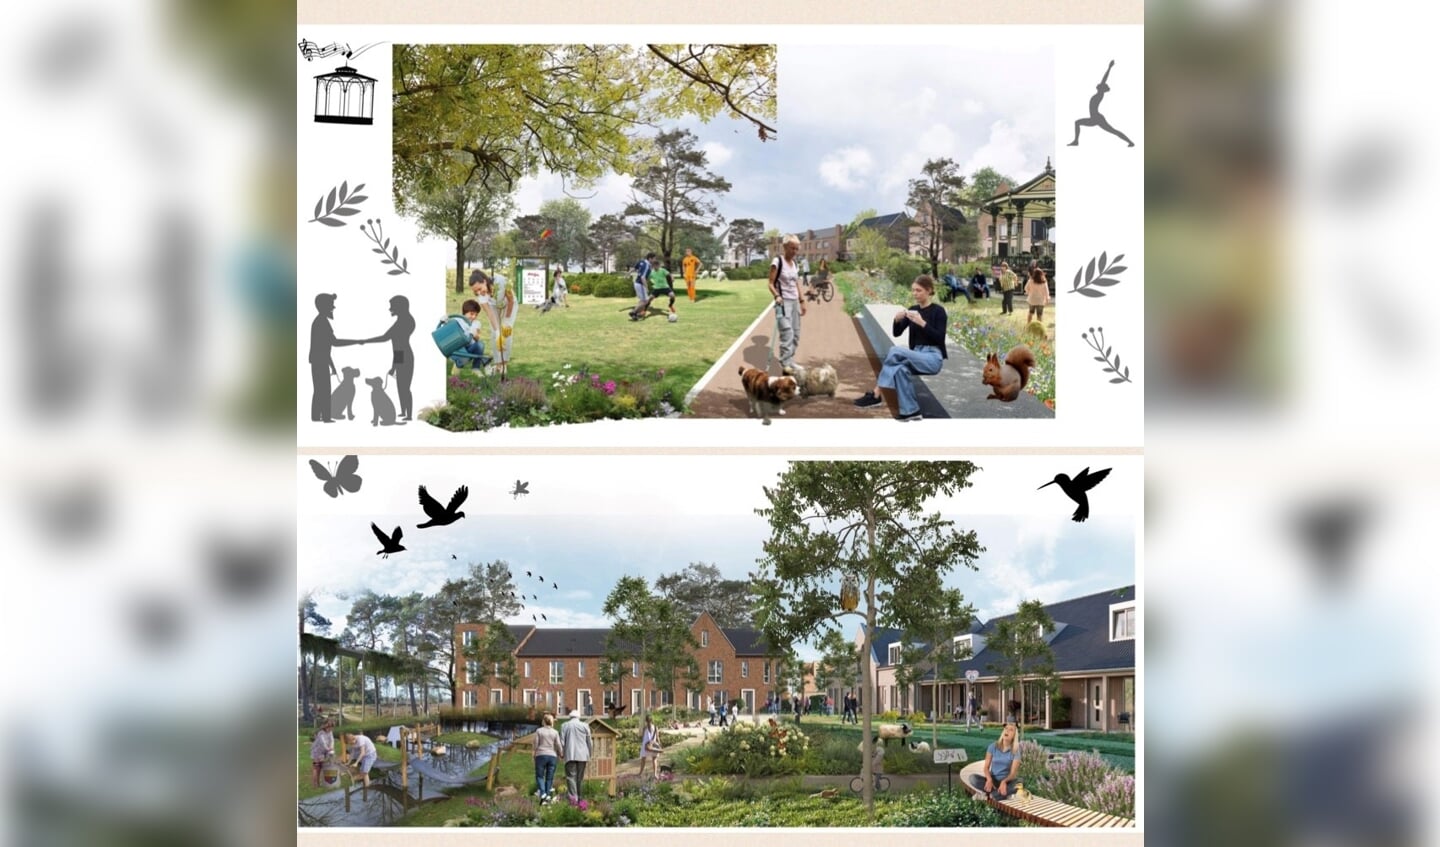 De sfeerposters voor de openbare ruimte in het plangebied (variant A en variant B) worden geplaatst op www.samenwerkenaanheerde.nl. 